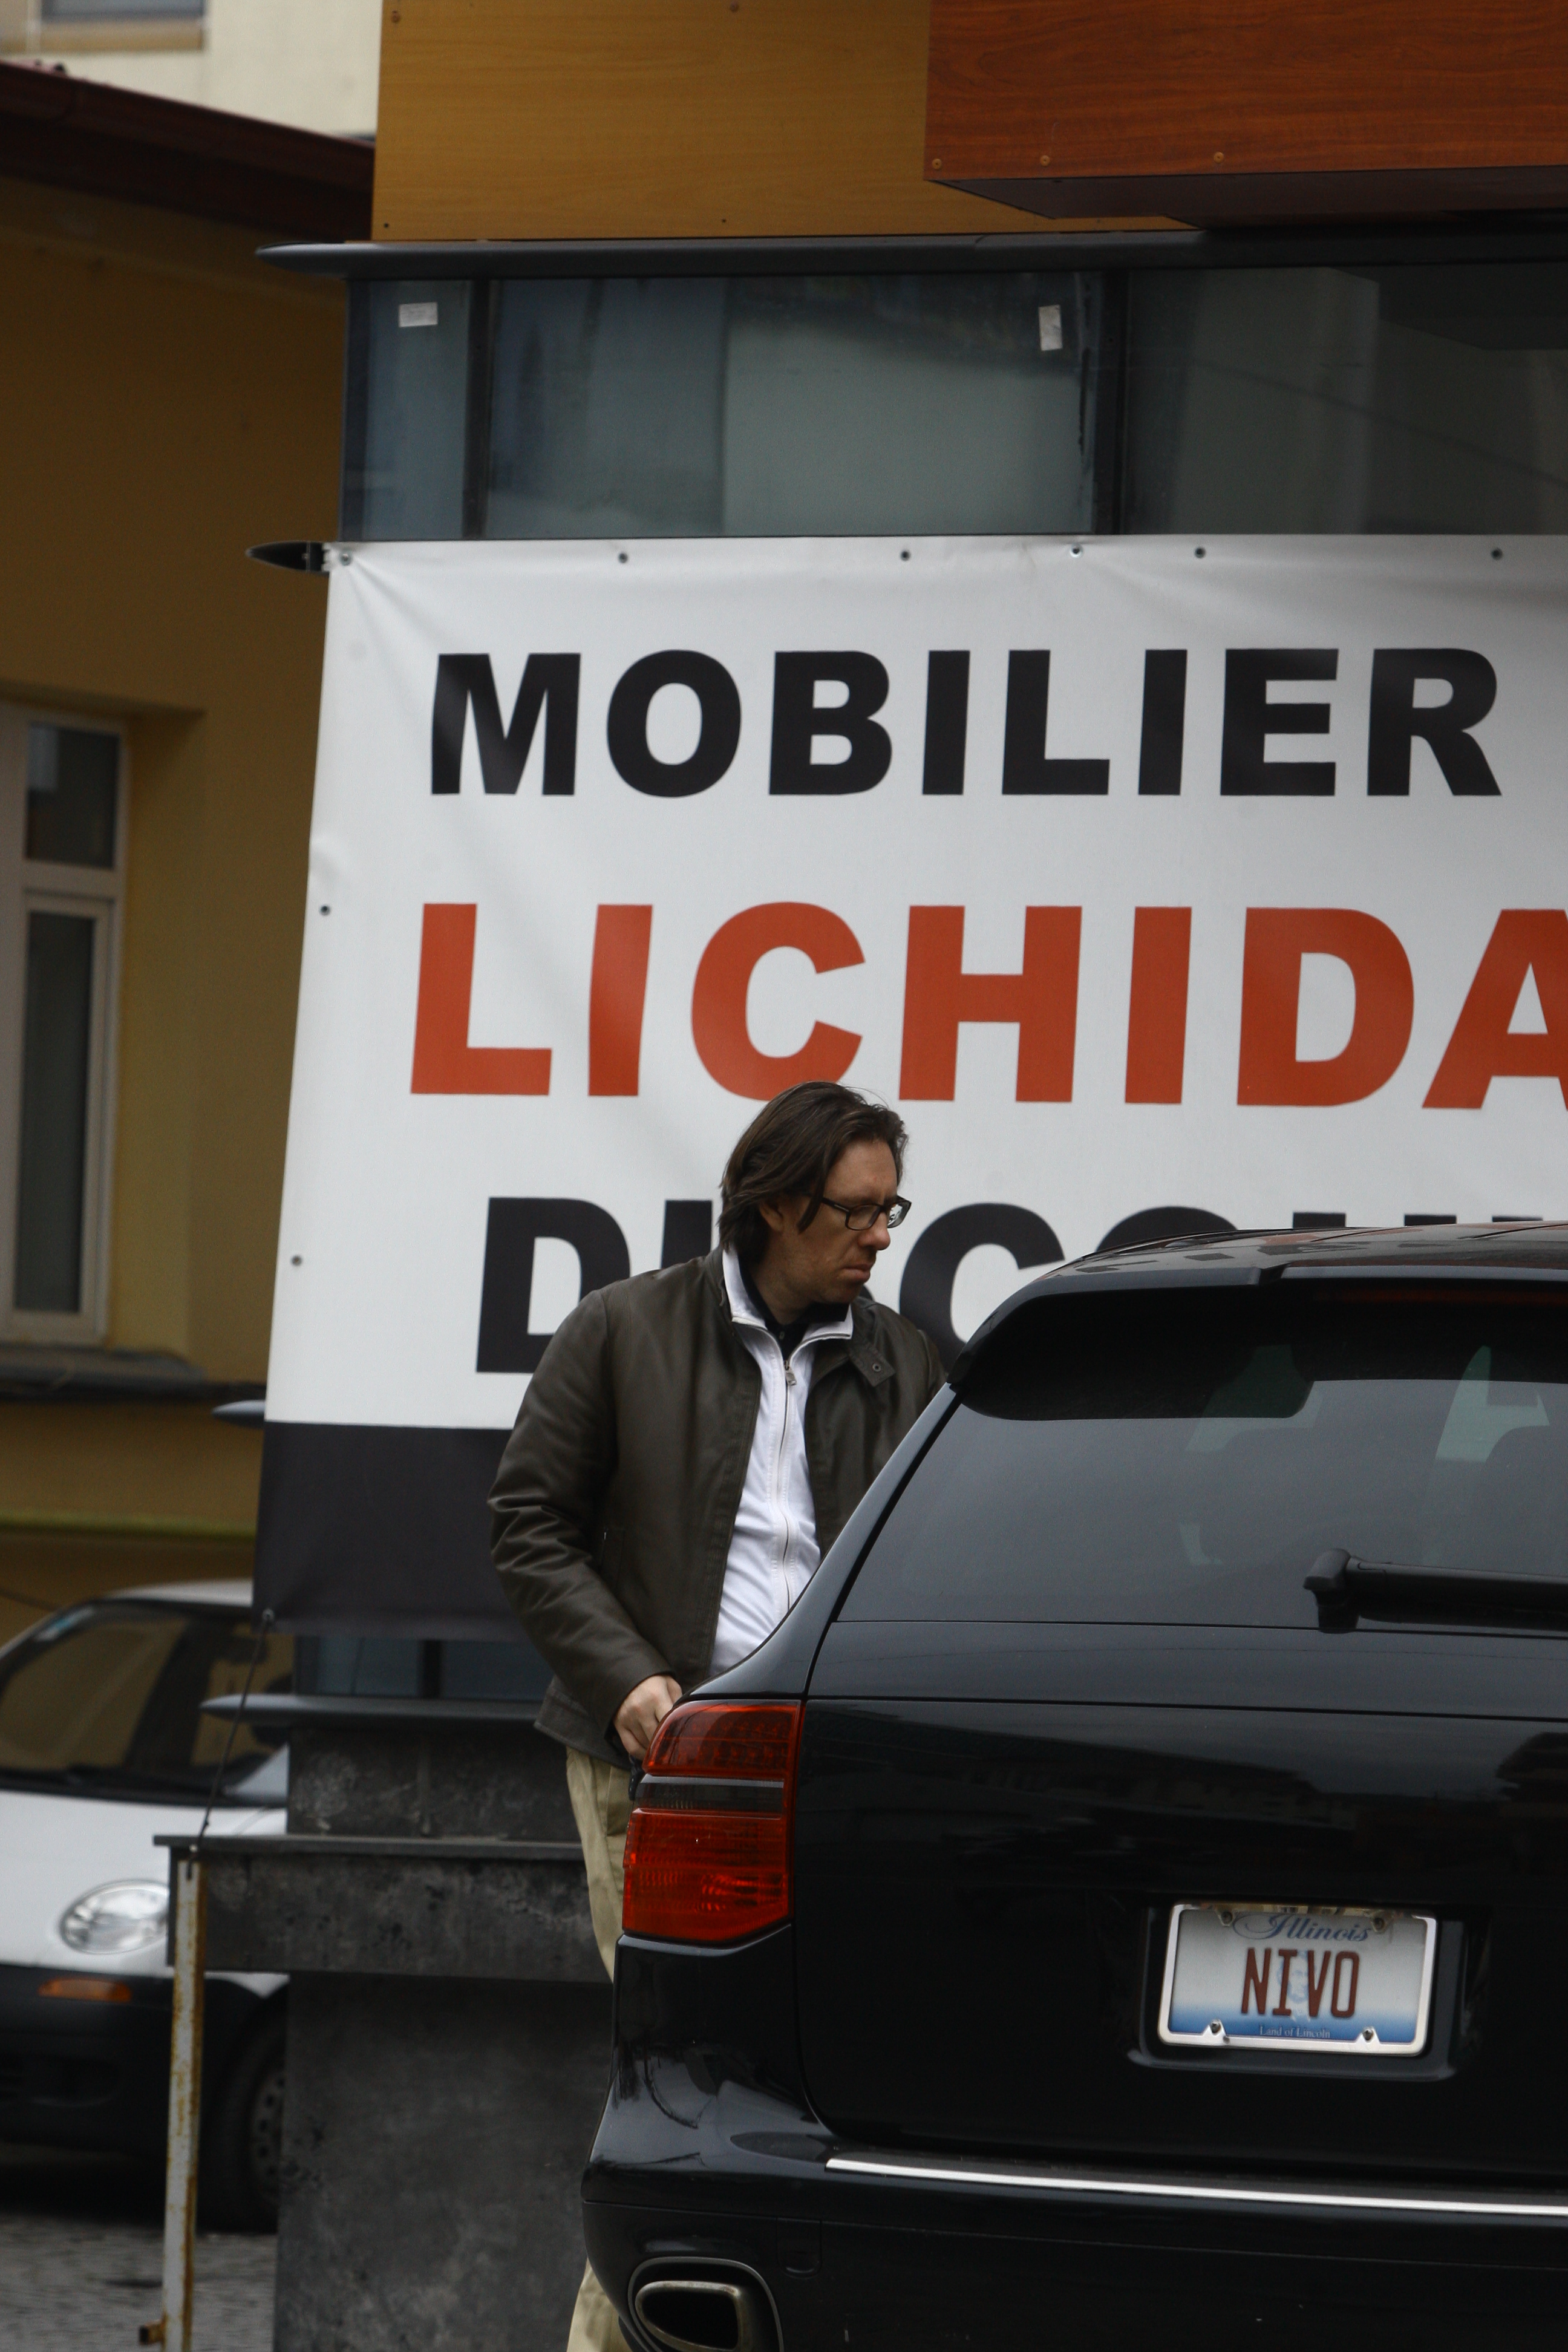 Naistul Nicolae Voiculet are numere persoanlizate la SUV-ul sau american